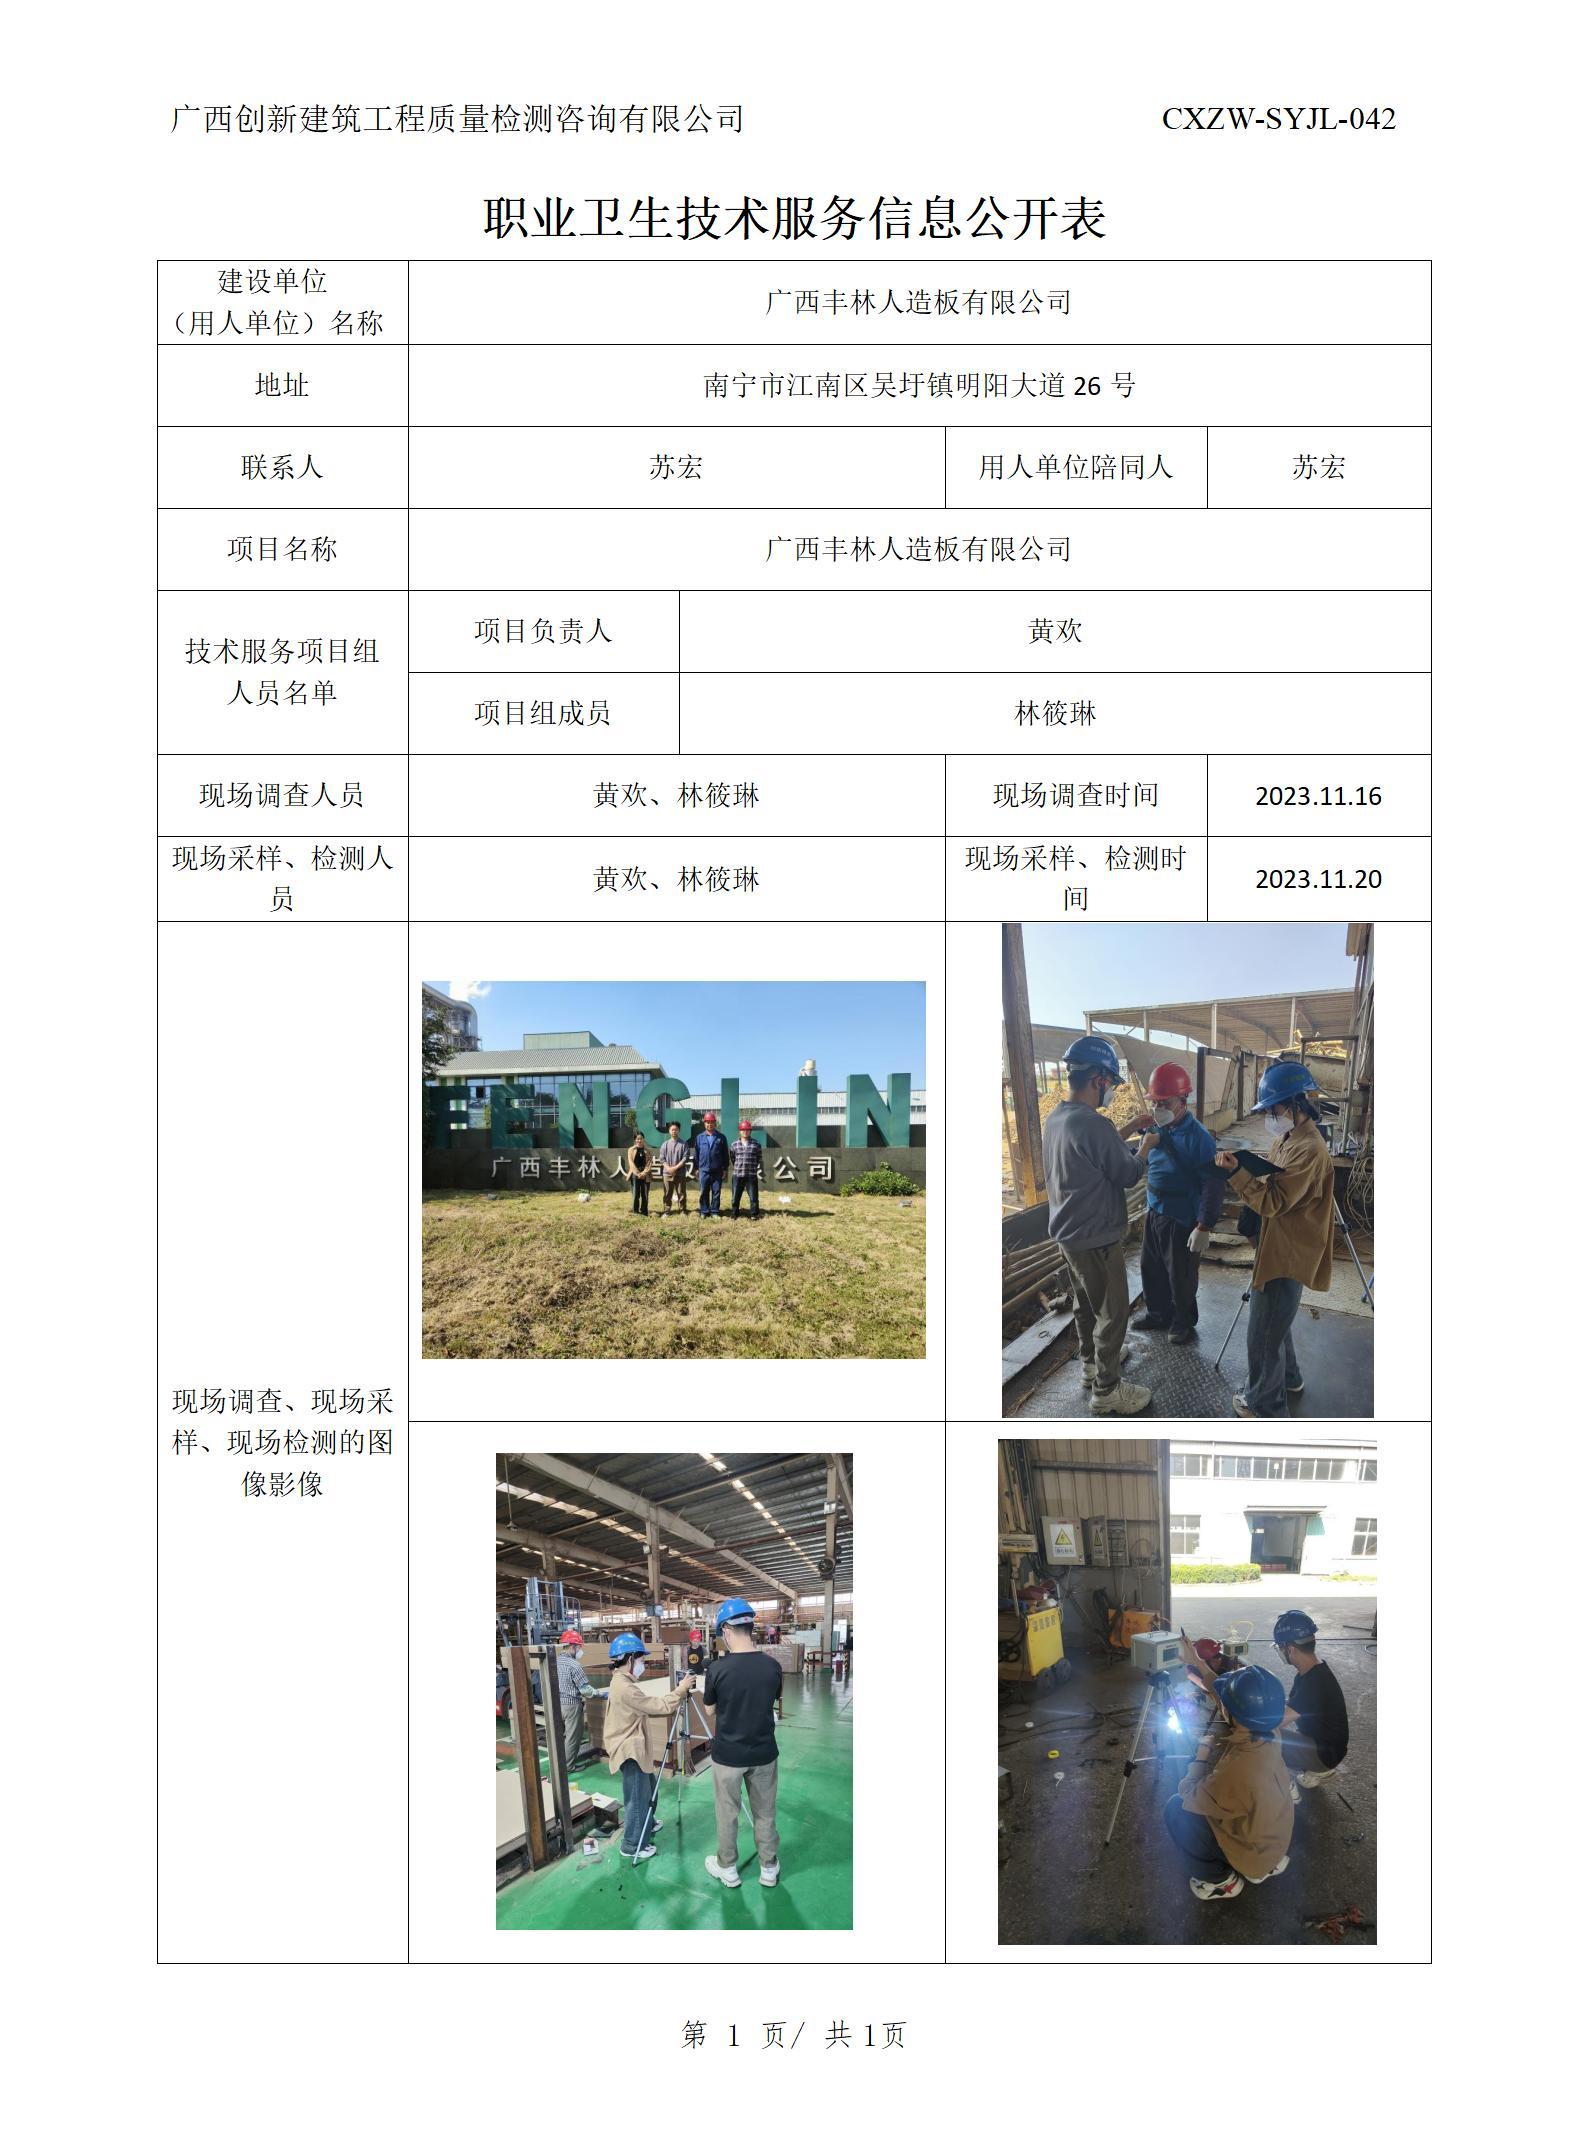 【职业卫生信息公开】广西丰林人造板有限公司